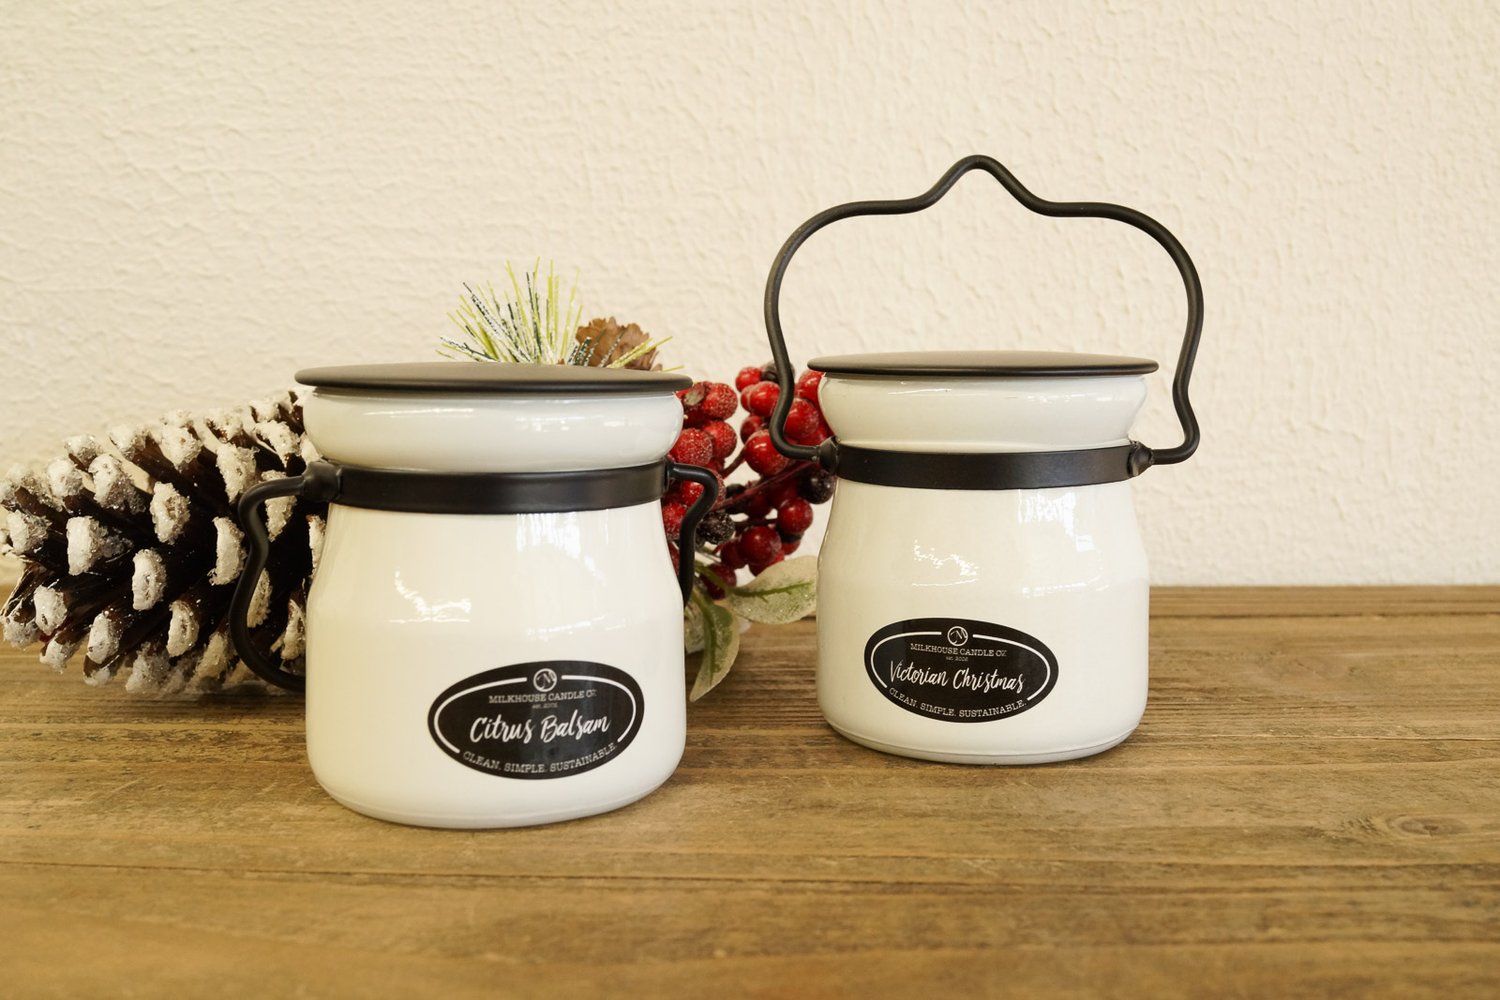 Balsam & Cedar 26 oz. Farmhouse Jar by Milkhouse Candle Creamery